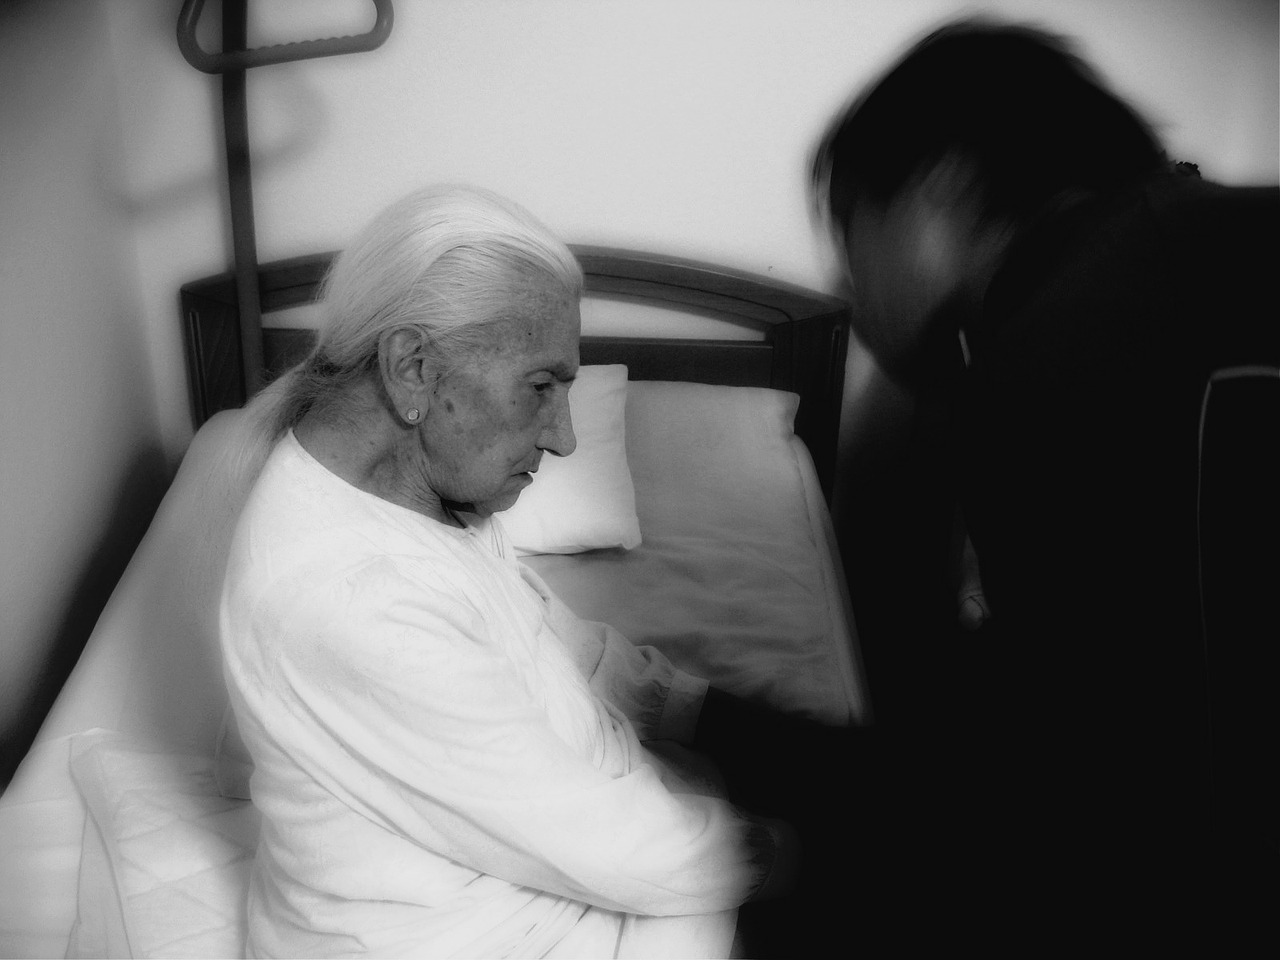 La violenza contro gli anziani: la percezione del fenomeno e l’impatto psicologico sugli operatori sanitari